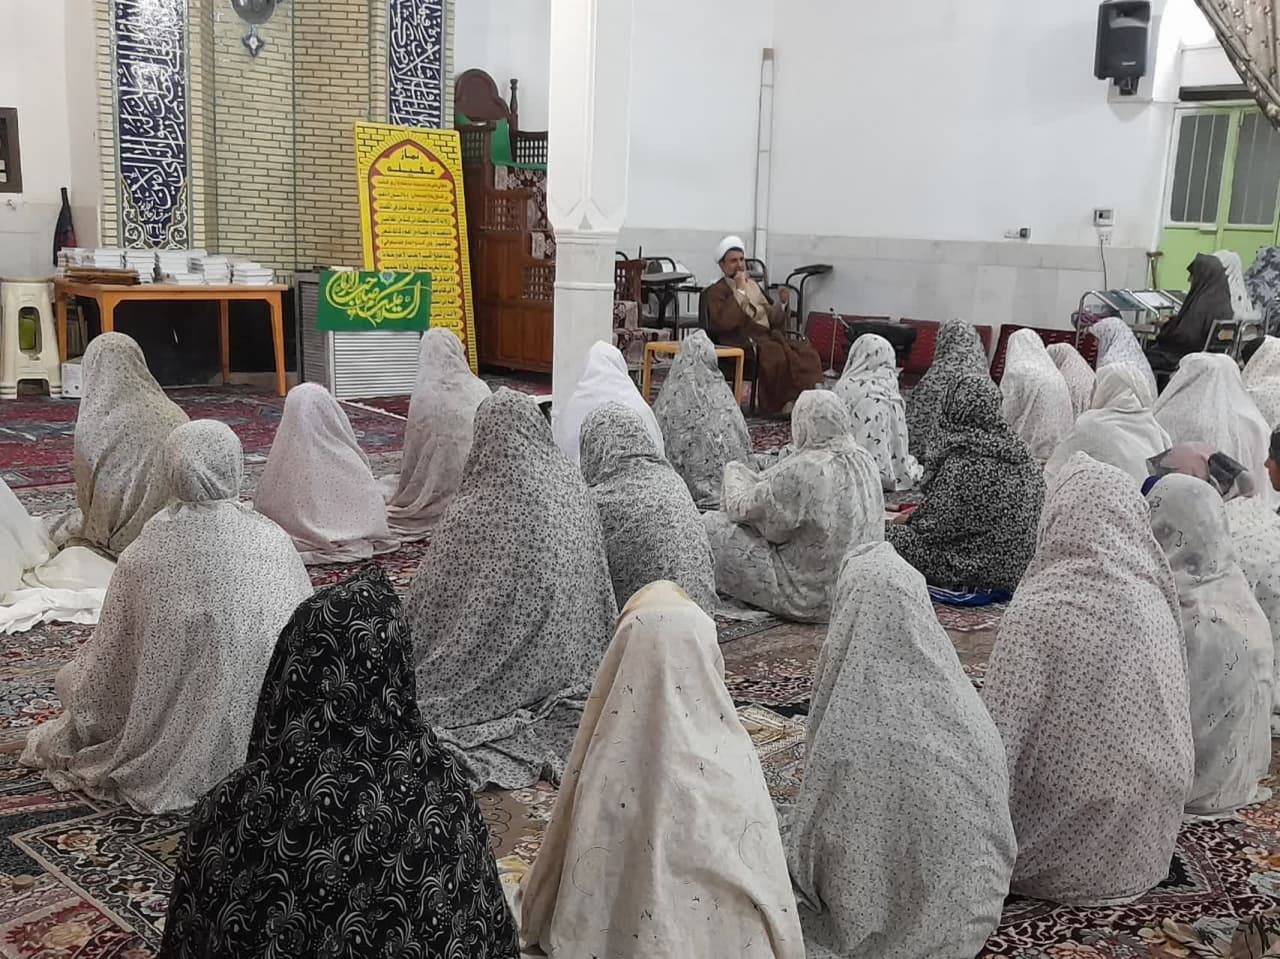 اعتکاف رمضانیه در شهرستان زابل برگزار شد